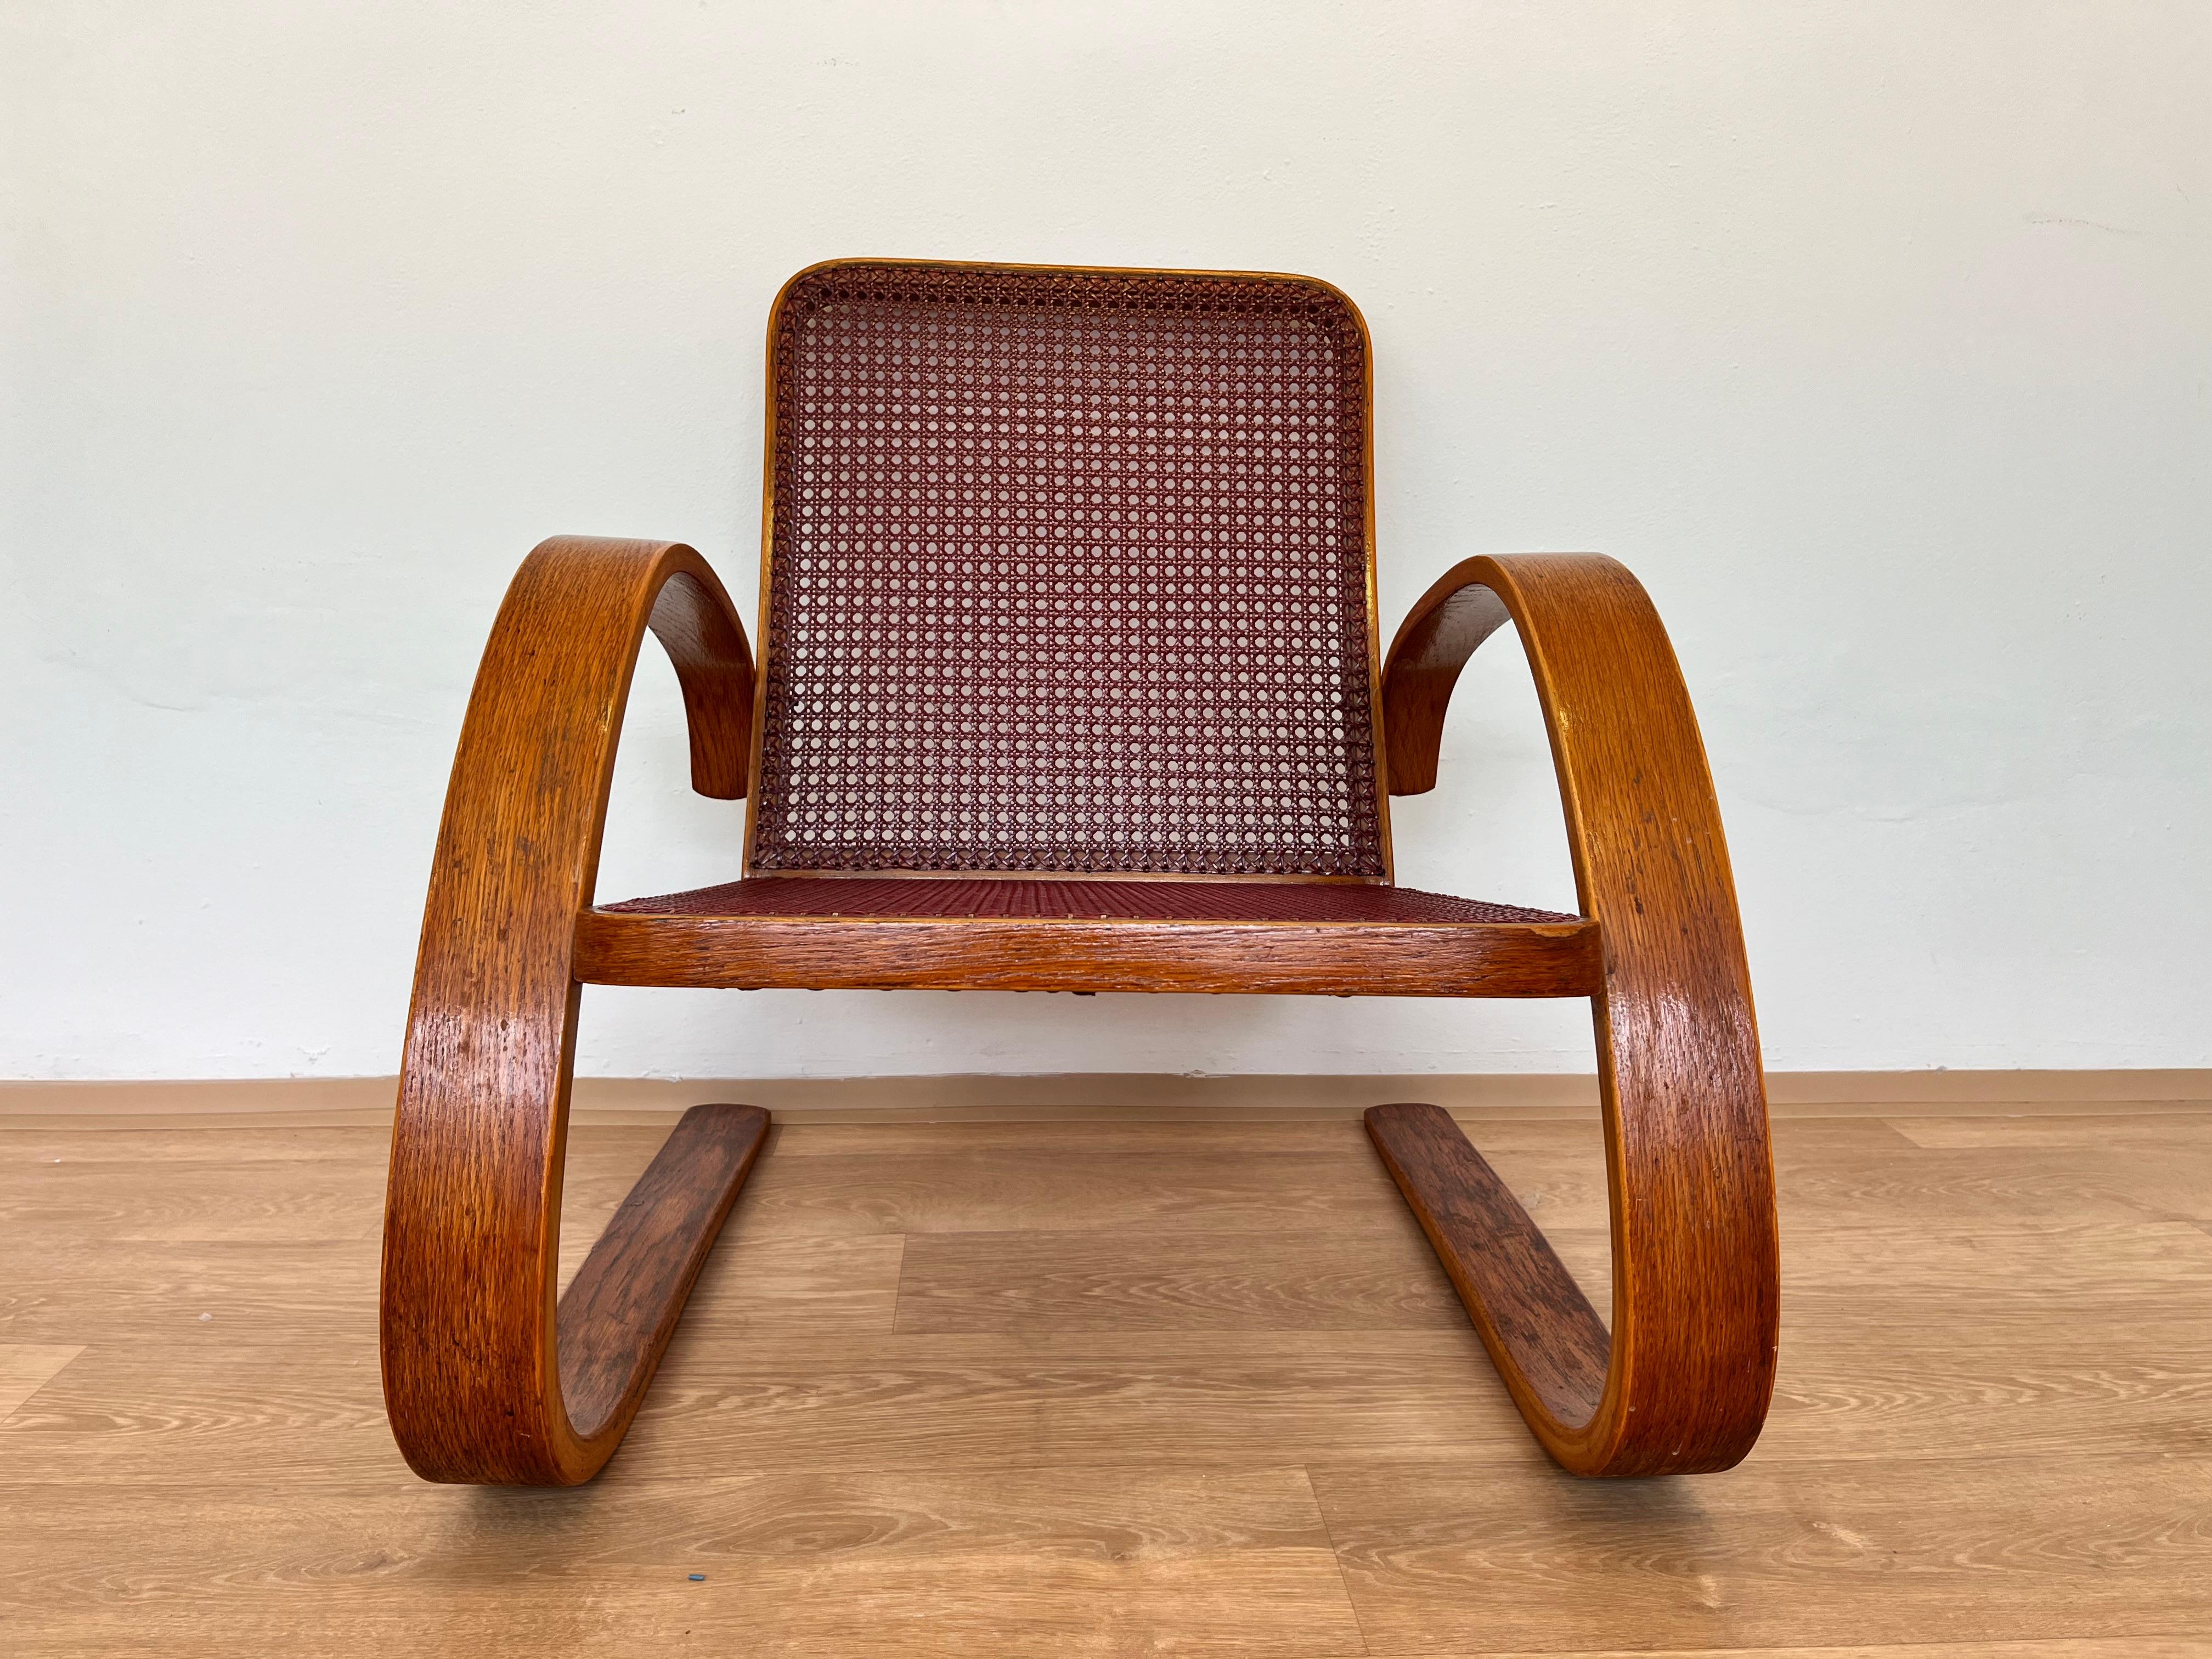 Wicker VERY RARE armchair by Miroslav Navrátil for Zdeněk Plesník - 1940s For Sale